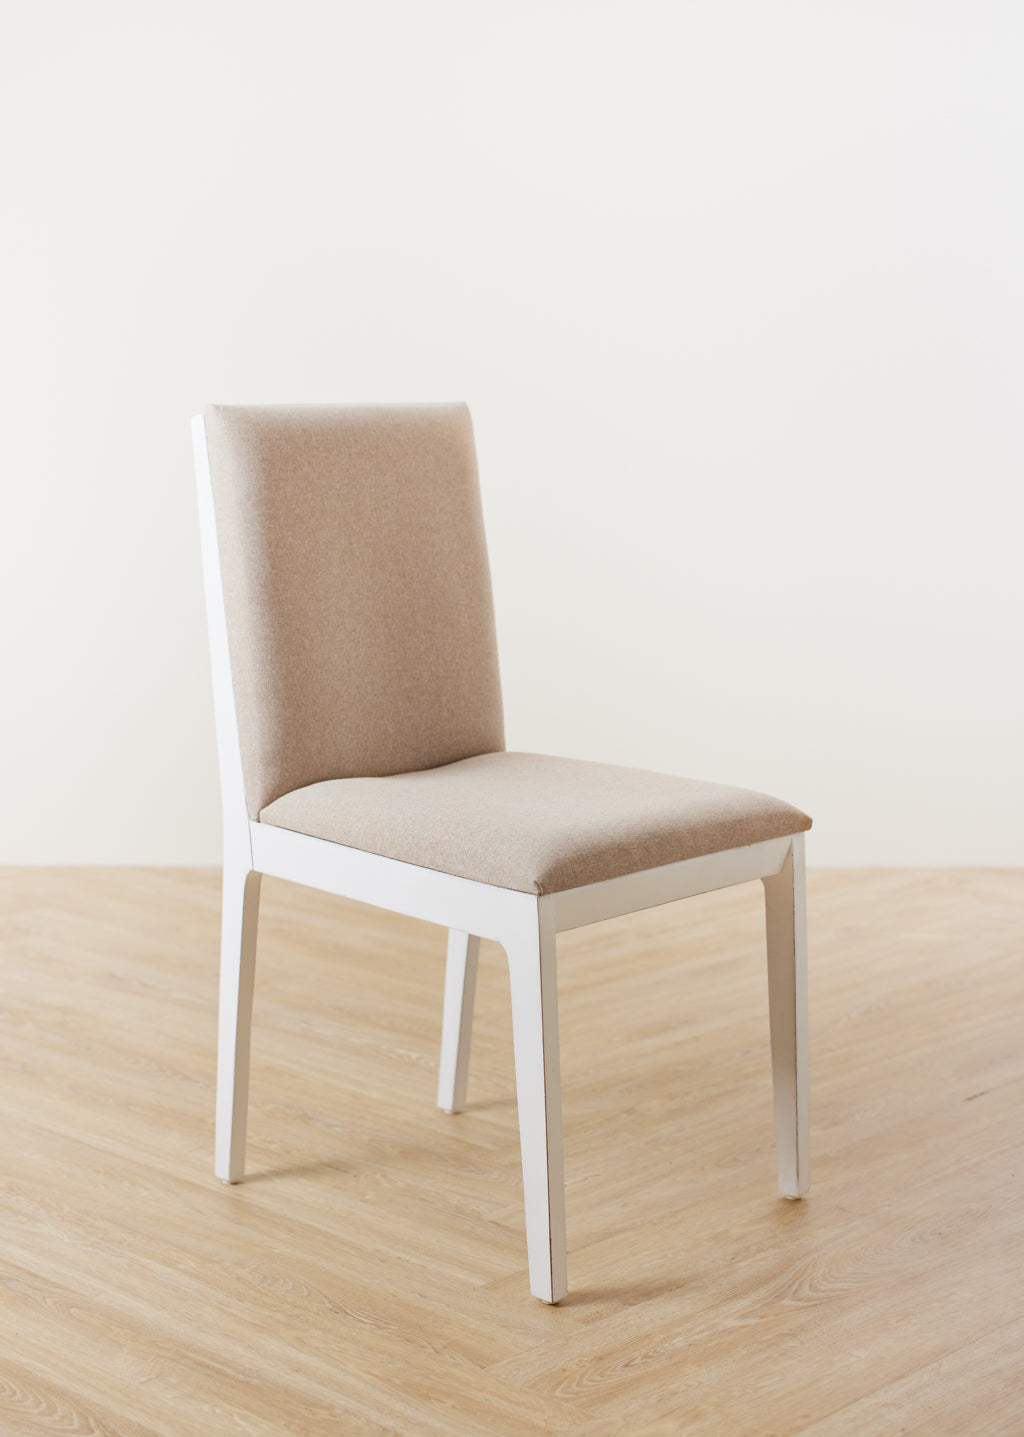 Malbaie Chair